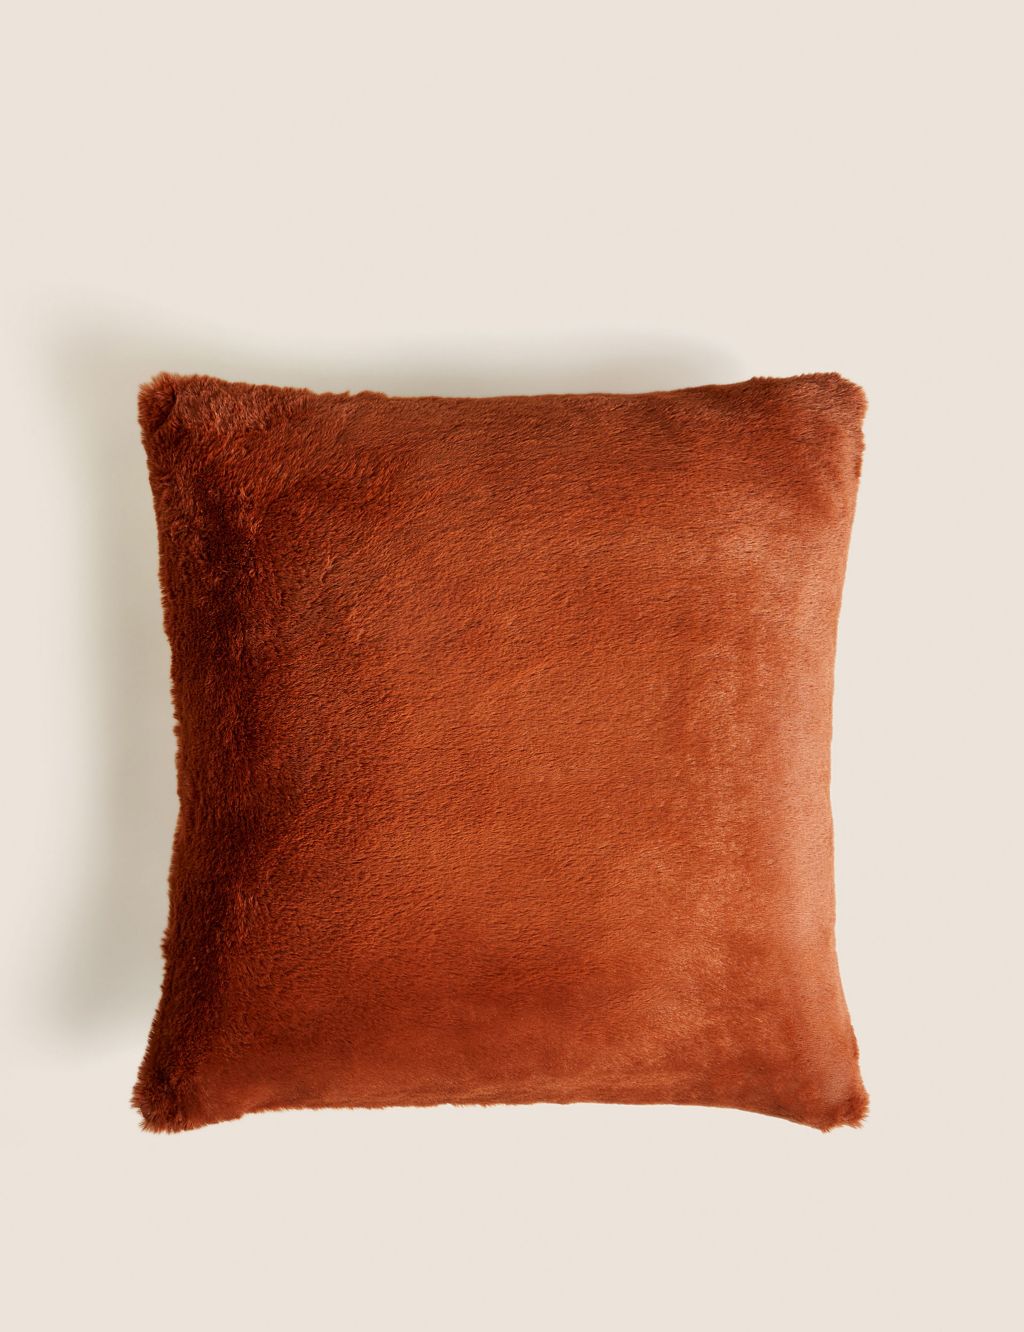 Custom Leather cushions, piped cushion, Morris Chair cushions